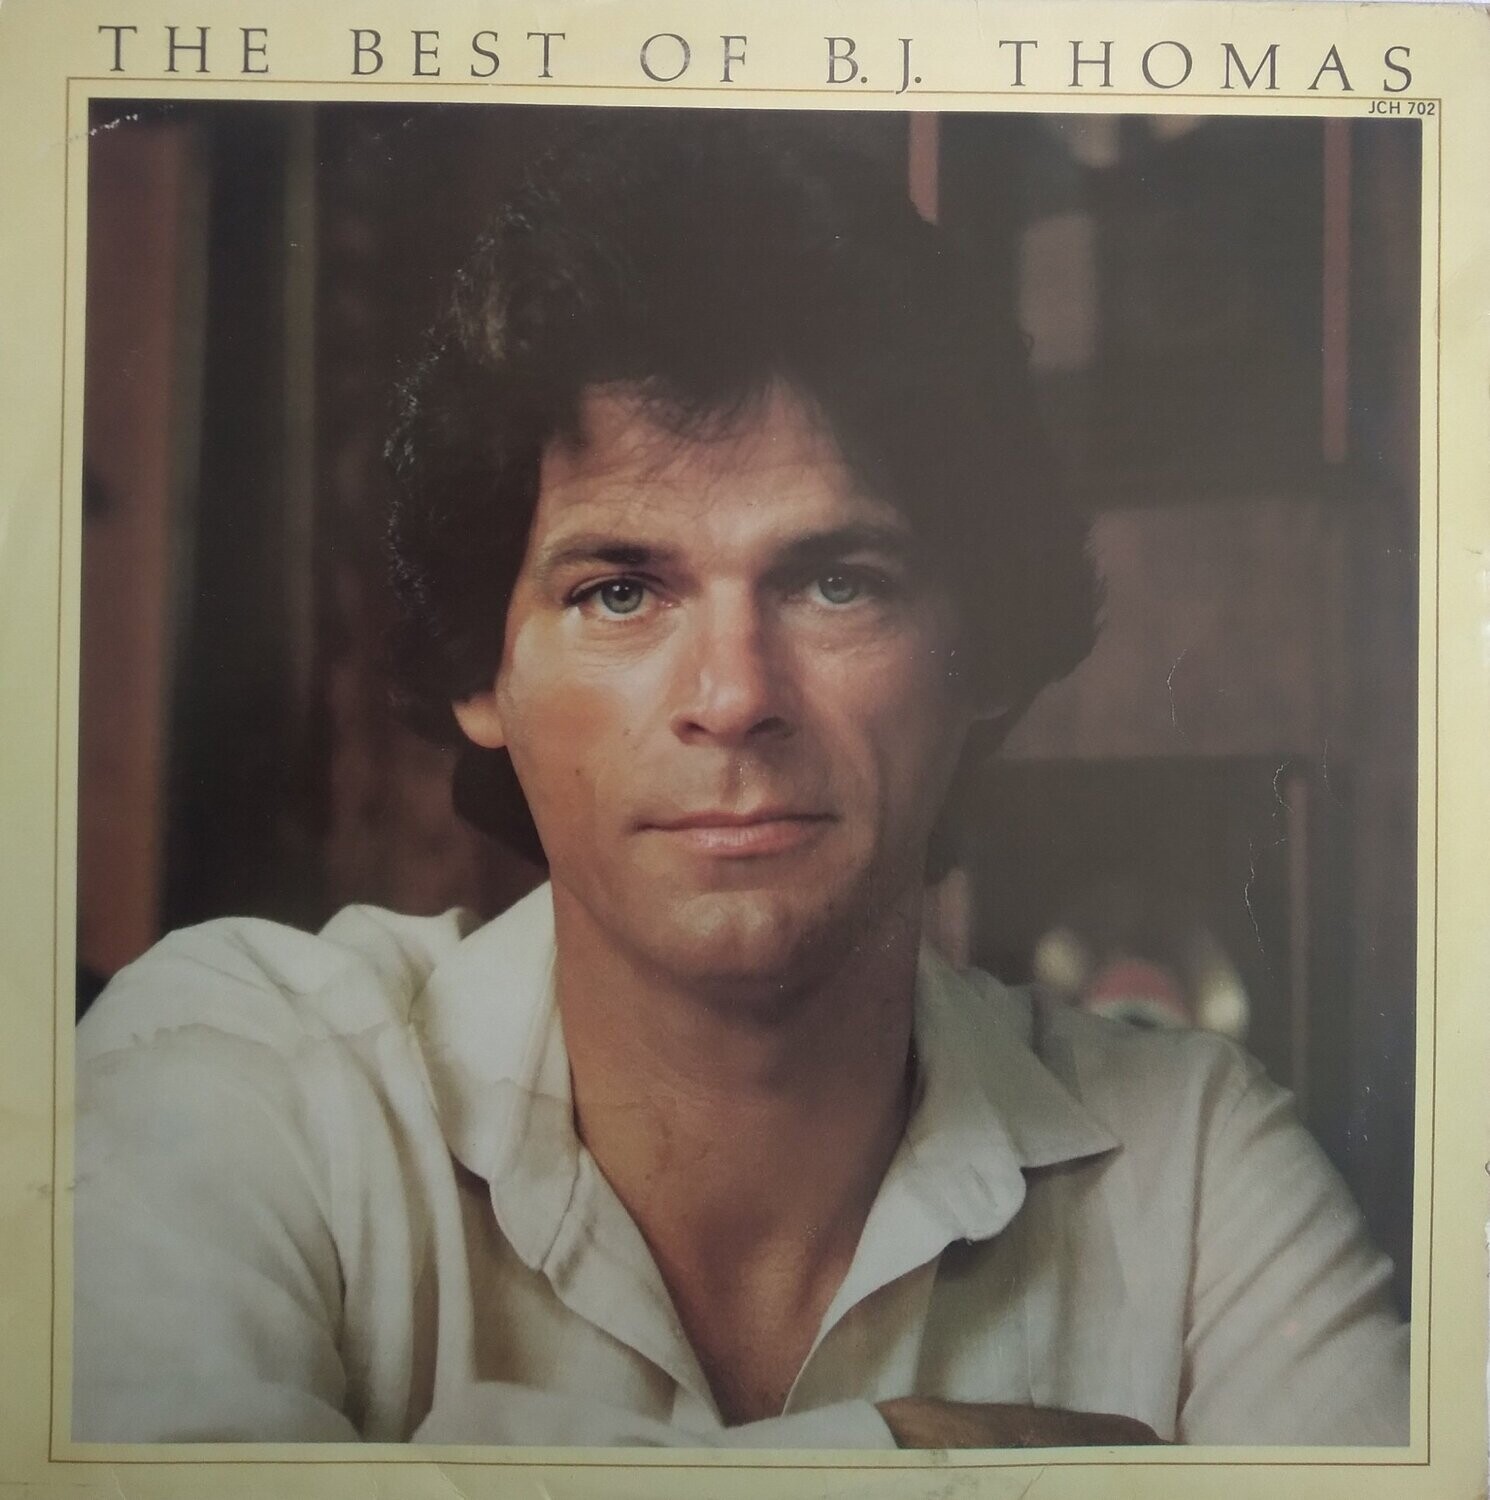 B.J. Thomas – The Best Of B.J. Thomas (1980)